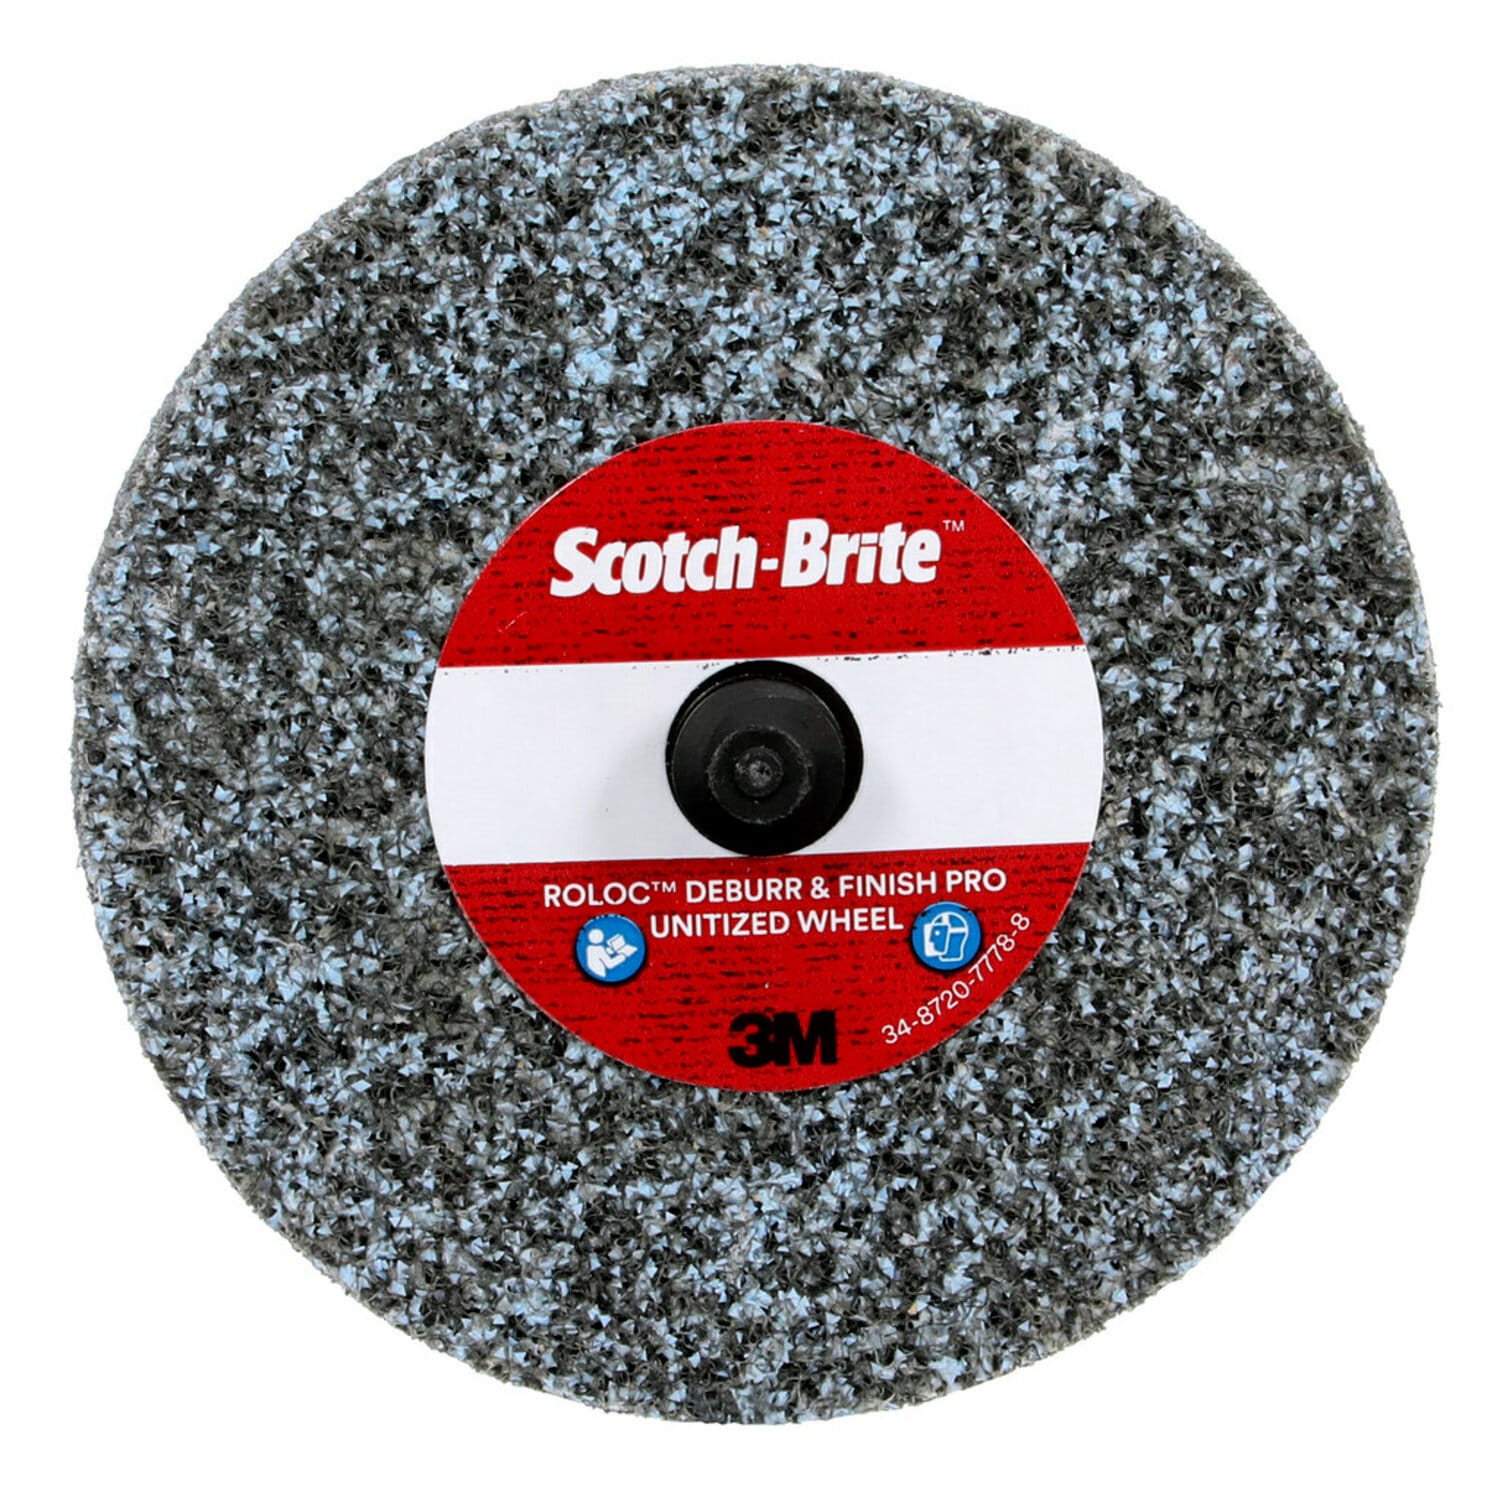 7010329346 - Scotch-Brite Roloc Deburr & Finish PRO Unitized Wheel, DP-UR, 2S Fine, TR, 3 in x 1/4 in, 10/Carton, 40 ea/Case